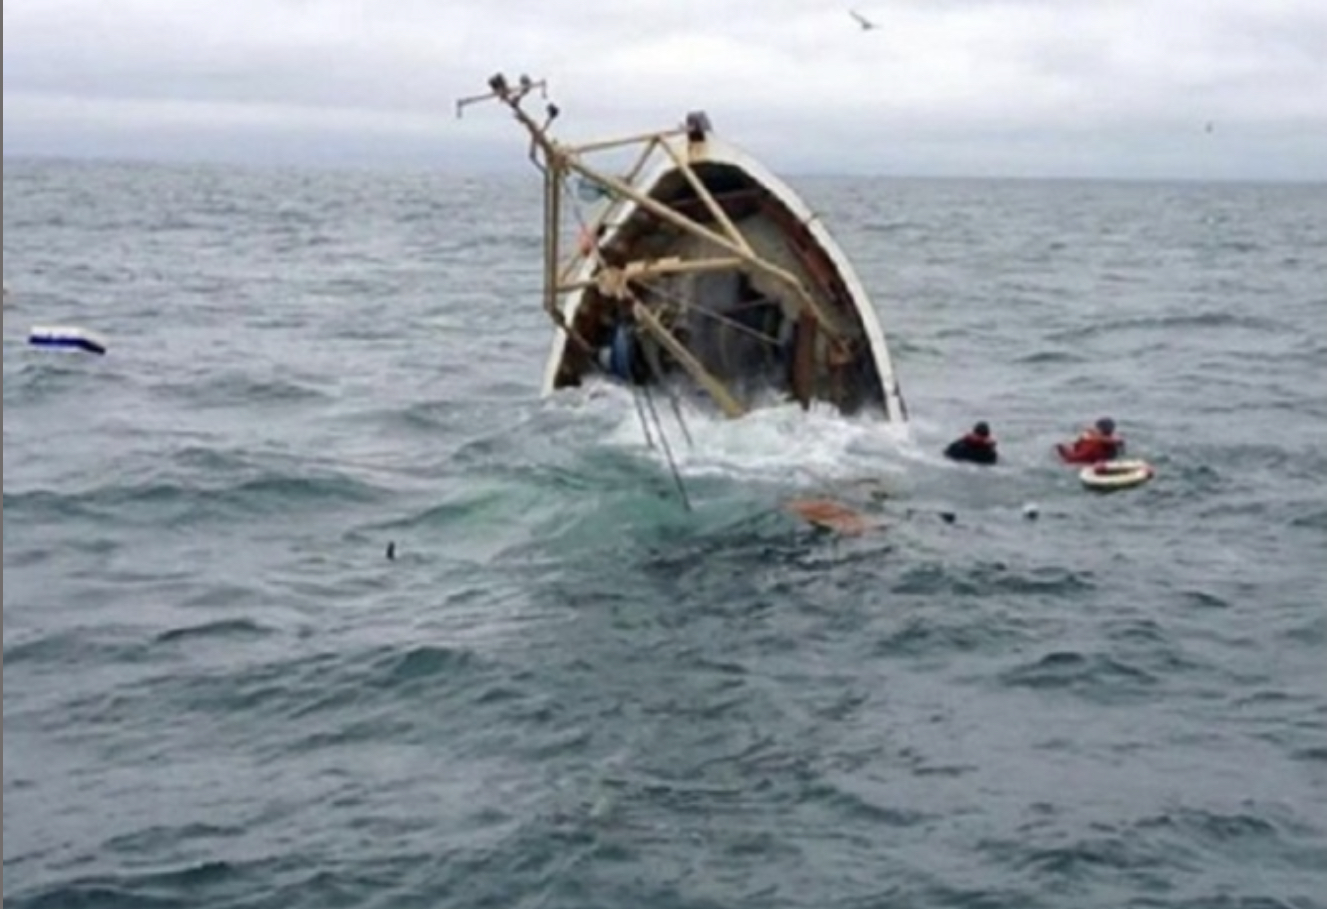 Accident en mer : un navire chinois heurte une pirogue sénégalaise et fait trois morts